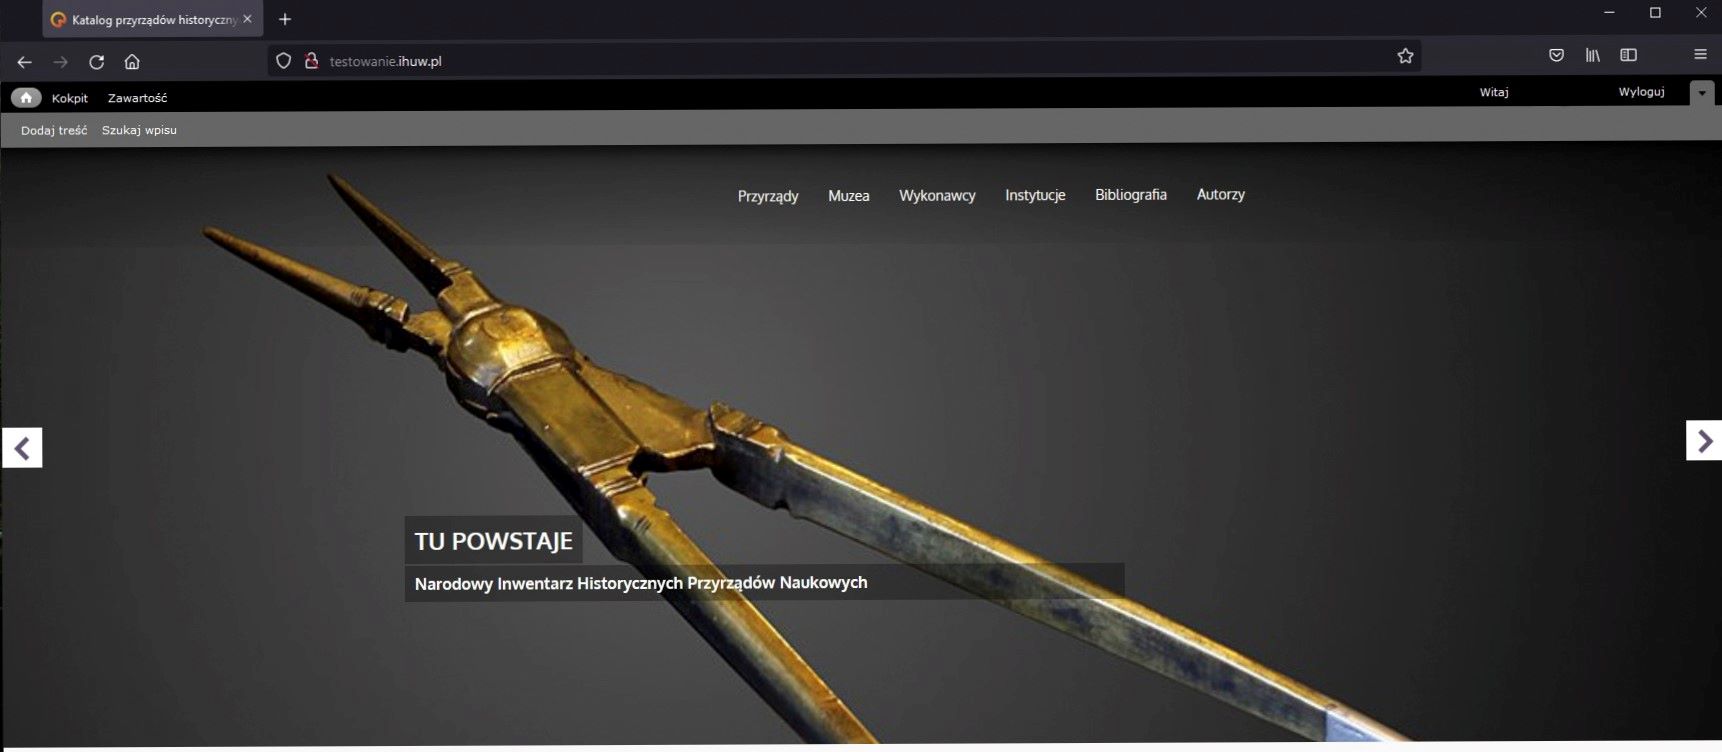 Widok strony internetowej ze zdjęciem złotych nożyc